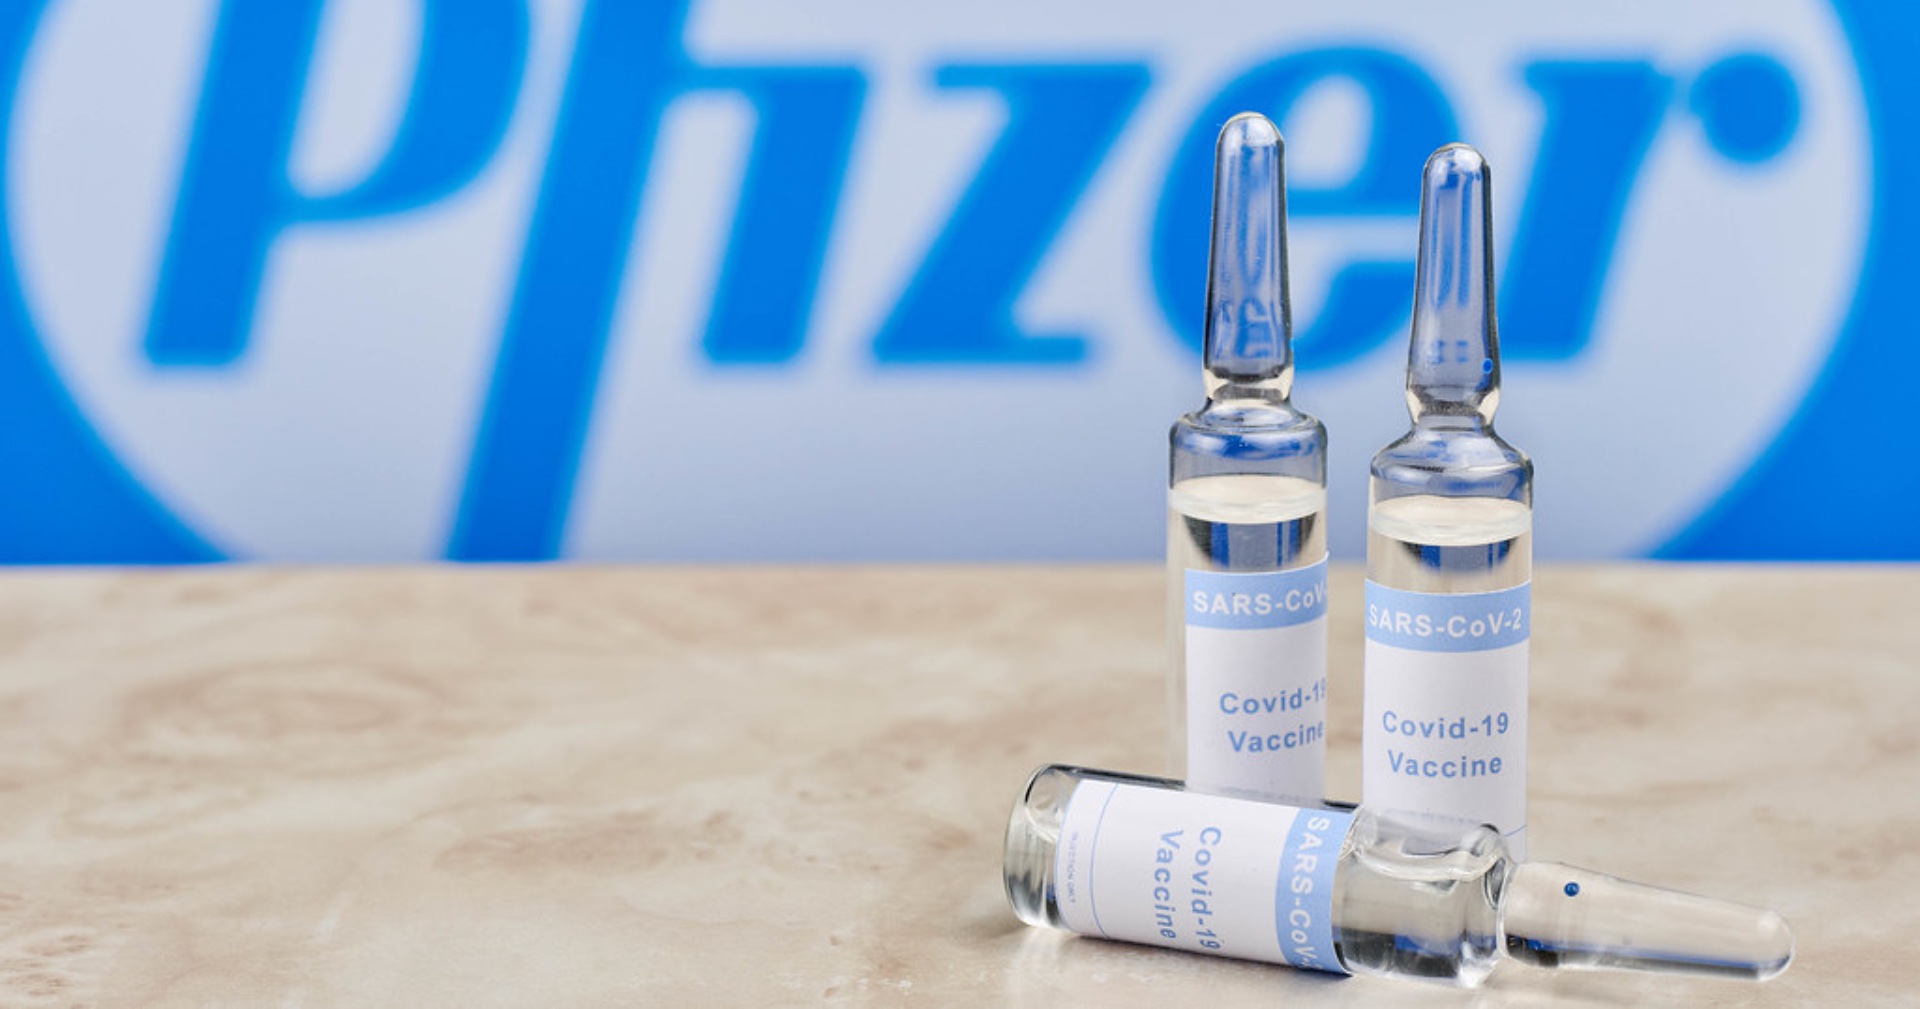 ออสเตรเลียสั่งซื้อวัคซีน Pfizer เพิ่มสองเท่า จากความกังวลในวัคซีน AstraZeneca